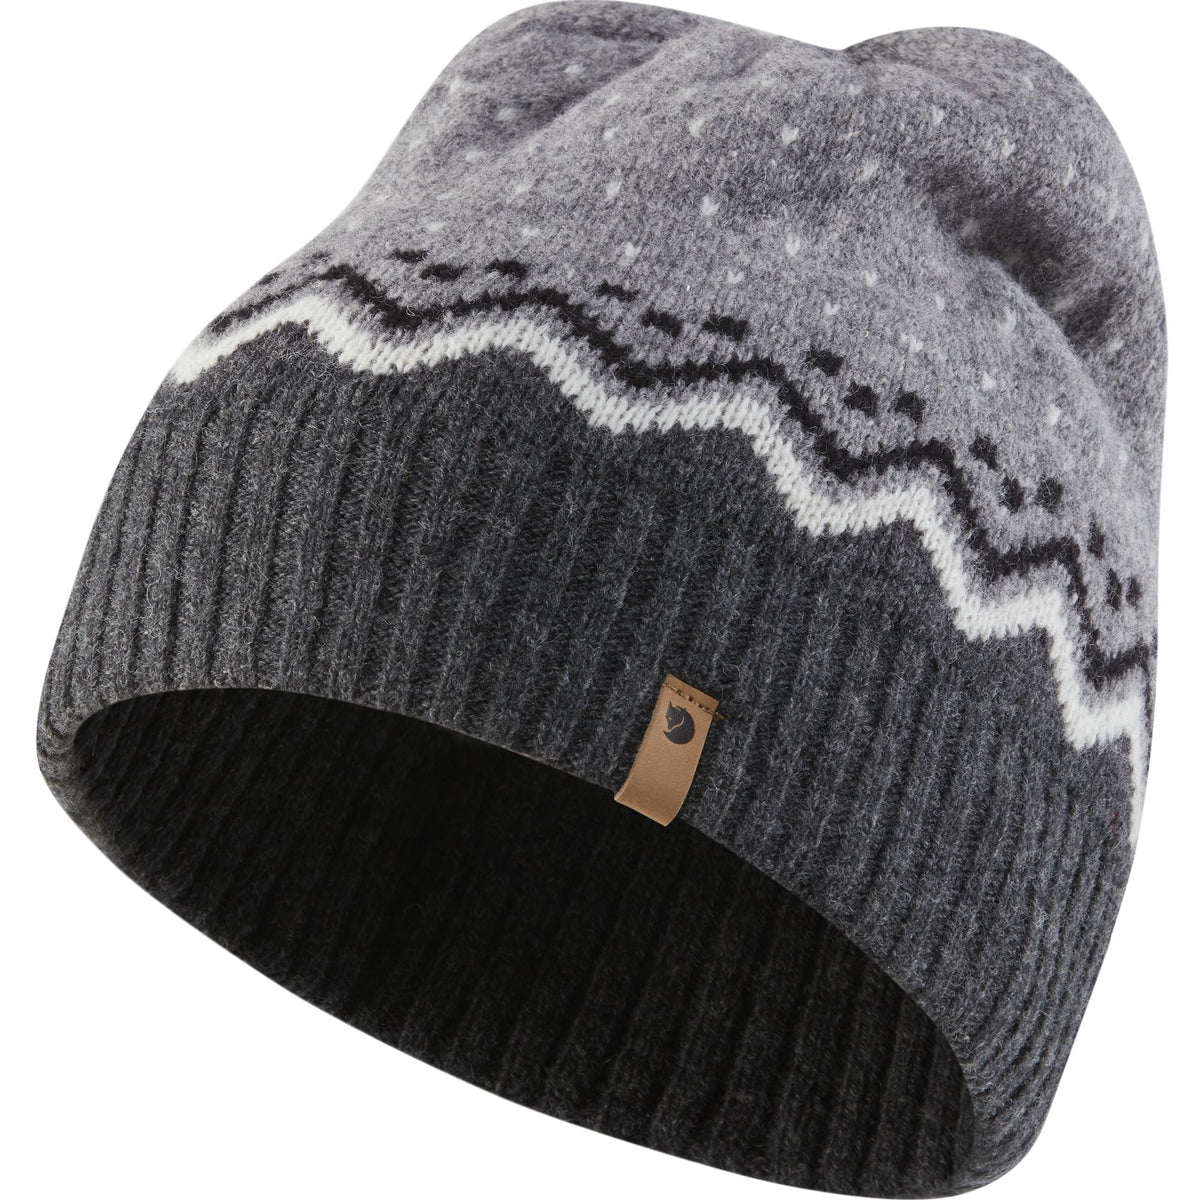 Ovik Knit Hat – FjallravenThailand